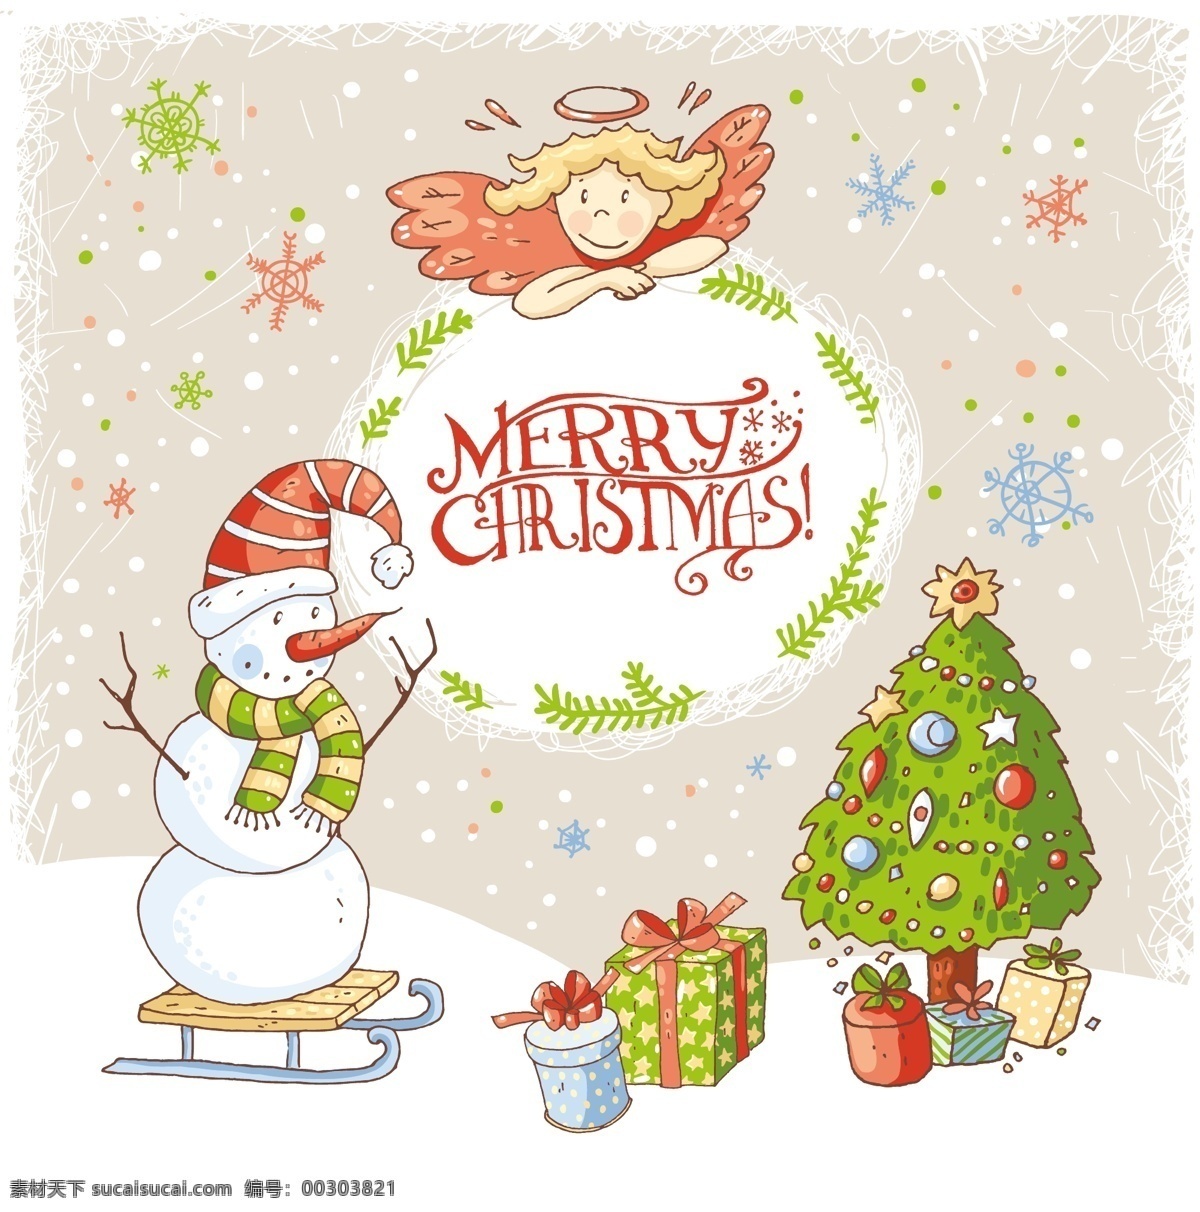 温馨 圣诞节 雪地 背景 矢量 白色 雪橇 雪花 帽子 雪人 卡通人物 礼物 鞋子 手套 麋鹿 圣诞树 节日背景 礼盒背景 平面设计 元素